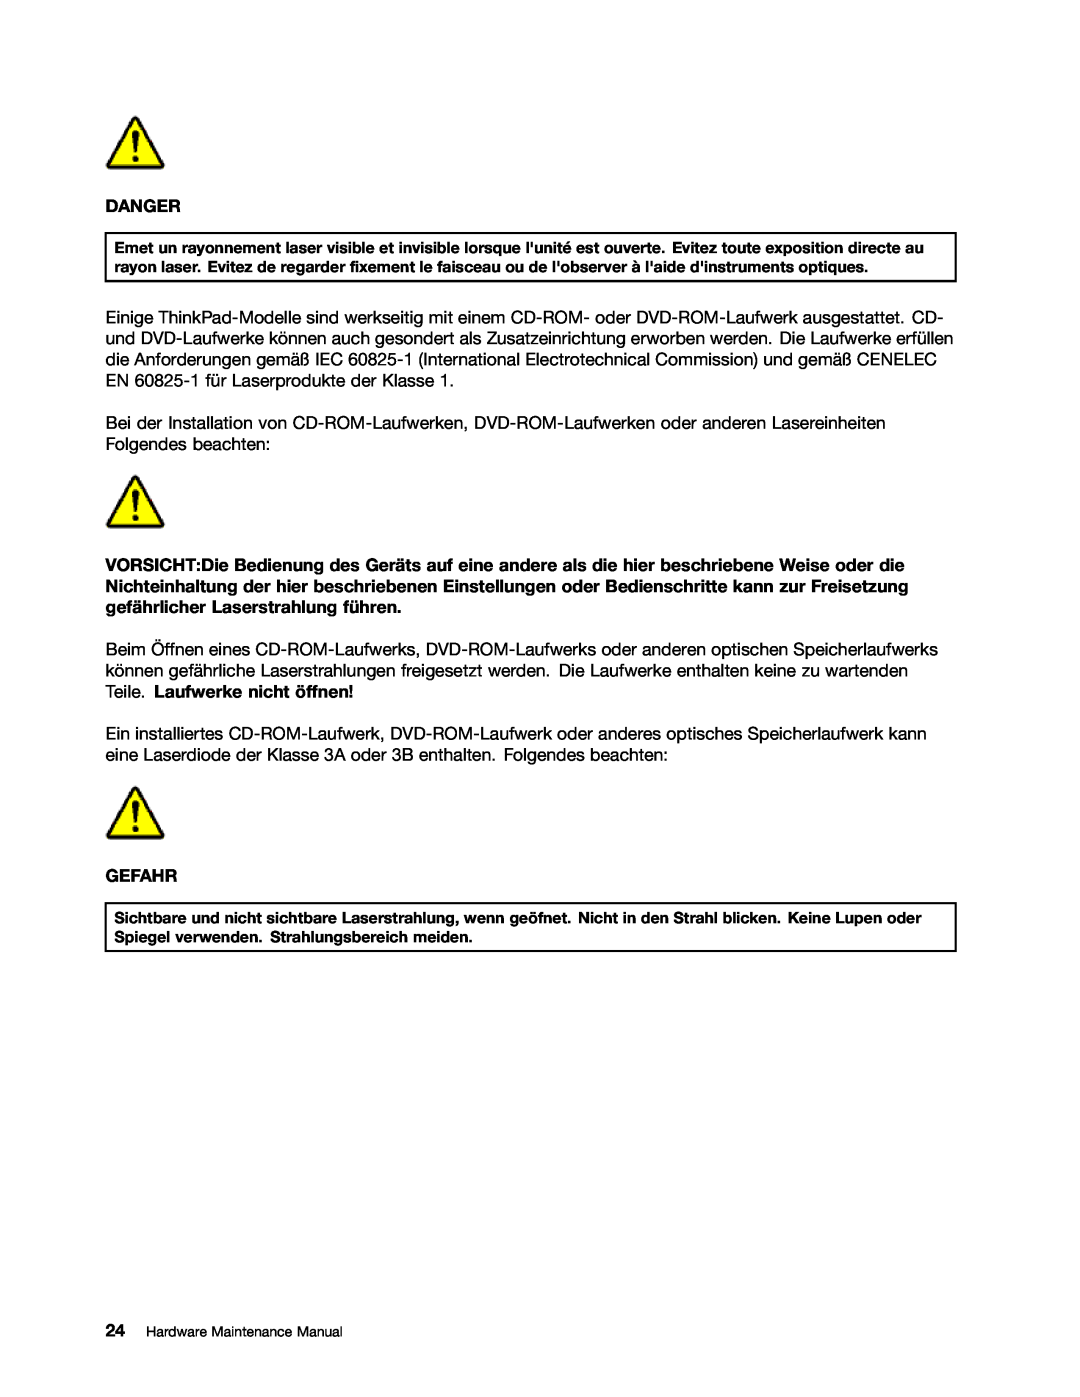 IBM T400S, T410SI manual Danger, Gefahr, Hardware Maintenance Manual 